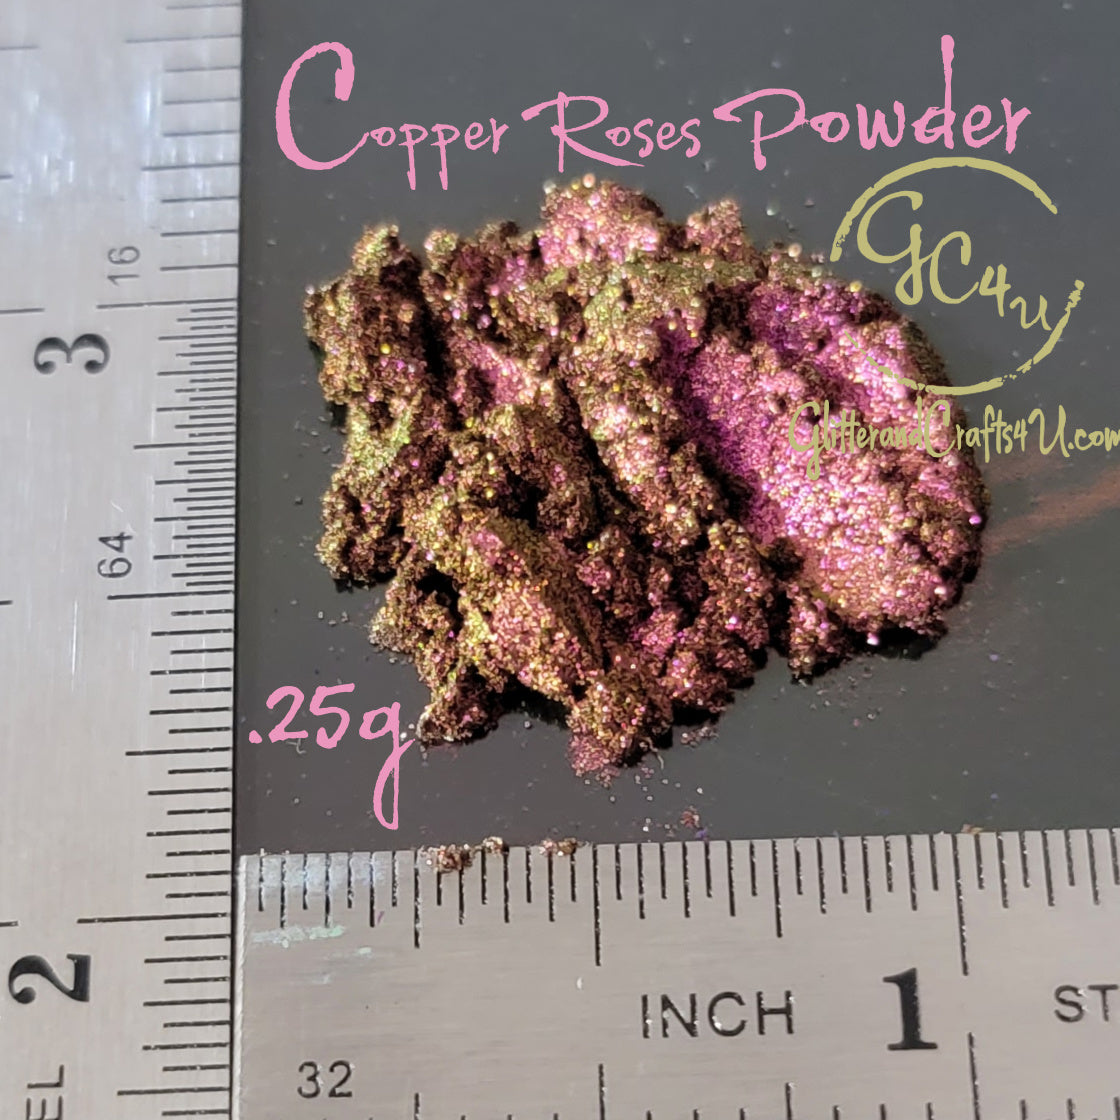 Super Copper Mica Powder